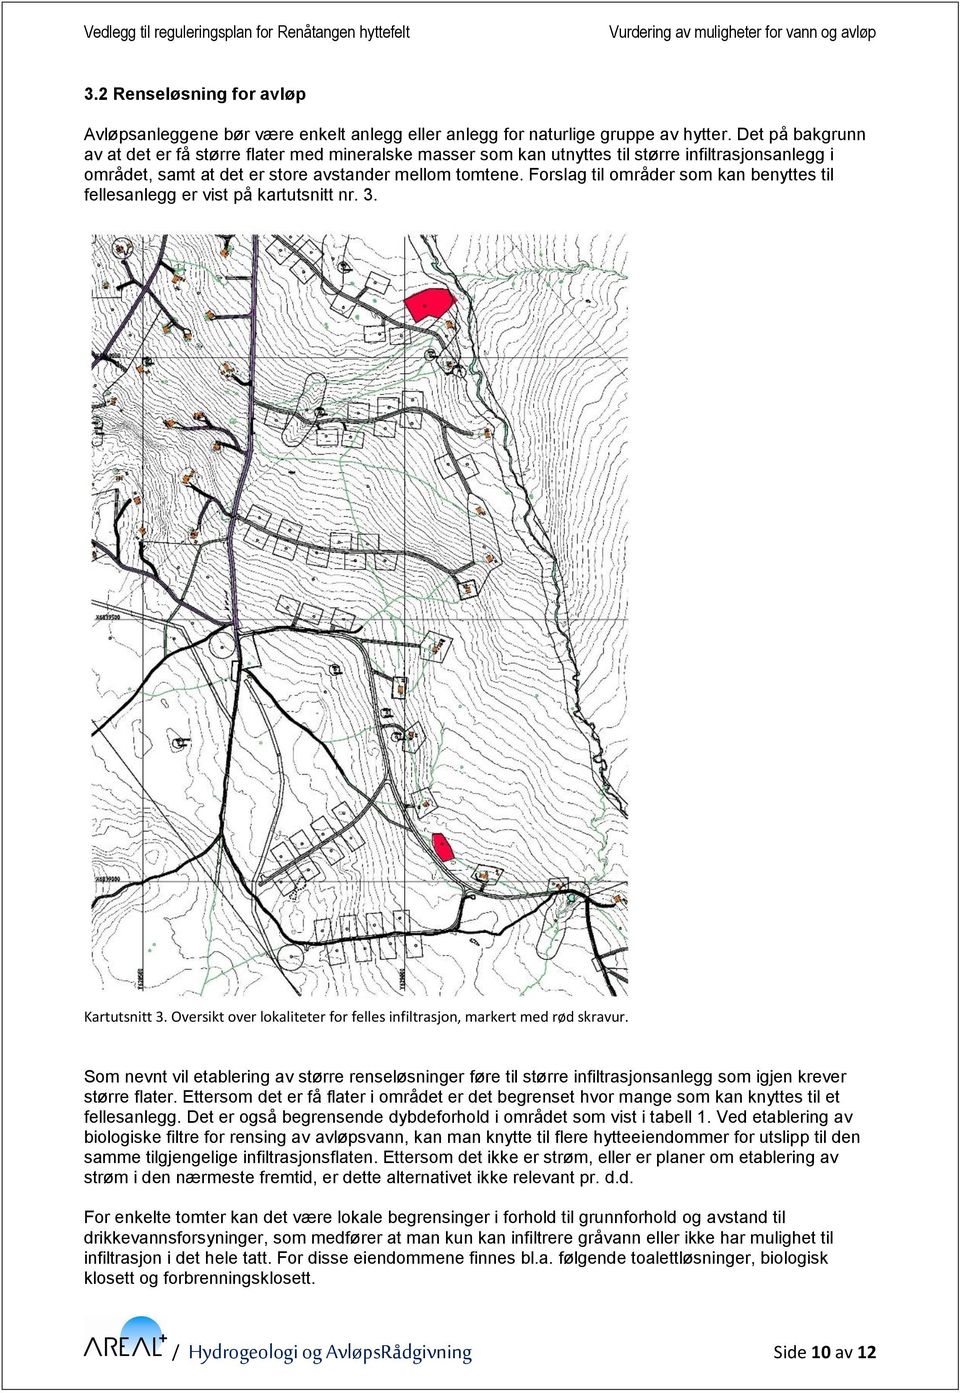 Forslag til områder som kan benyttes til fellesanlegg er vist på kartutsnitt nr. 3. Kartutsnitt 3. Oversikt over lokaliteter for felles infiltrasjon, markert med rød skravur.